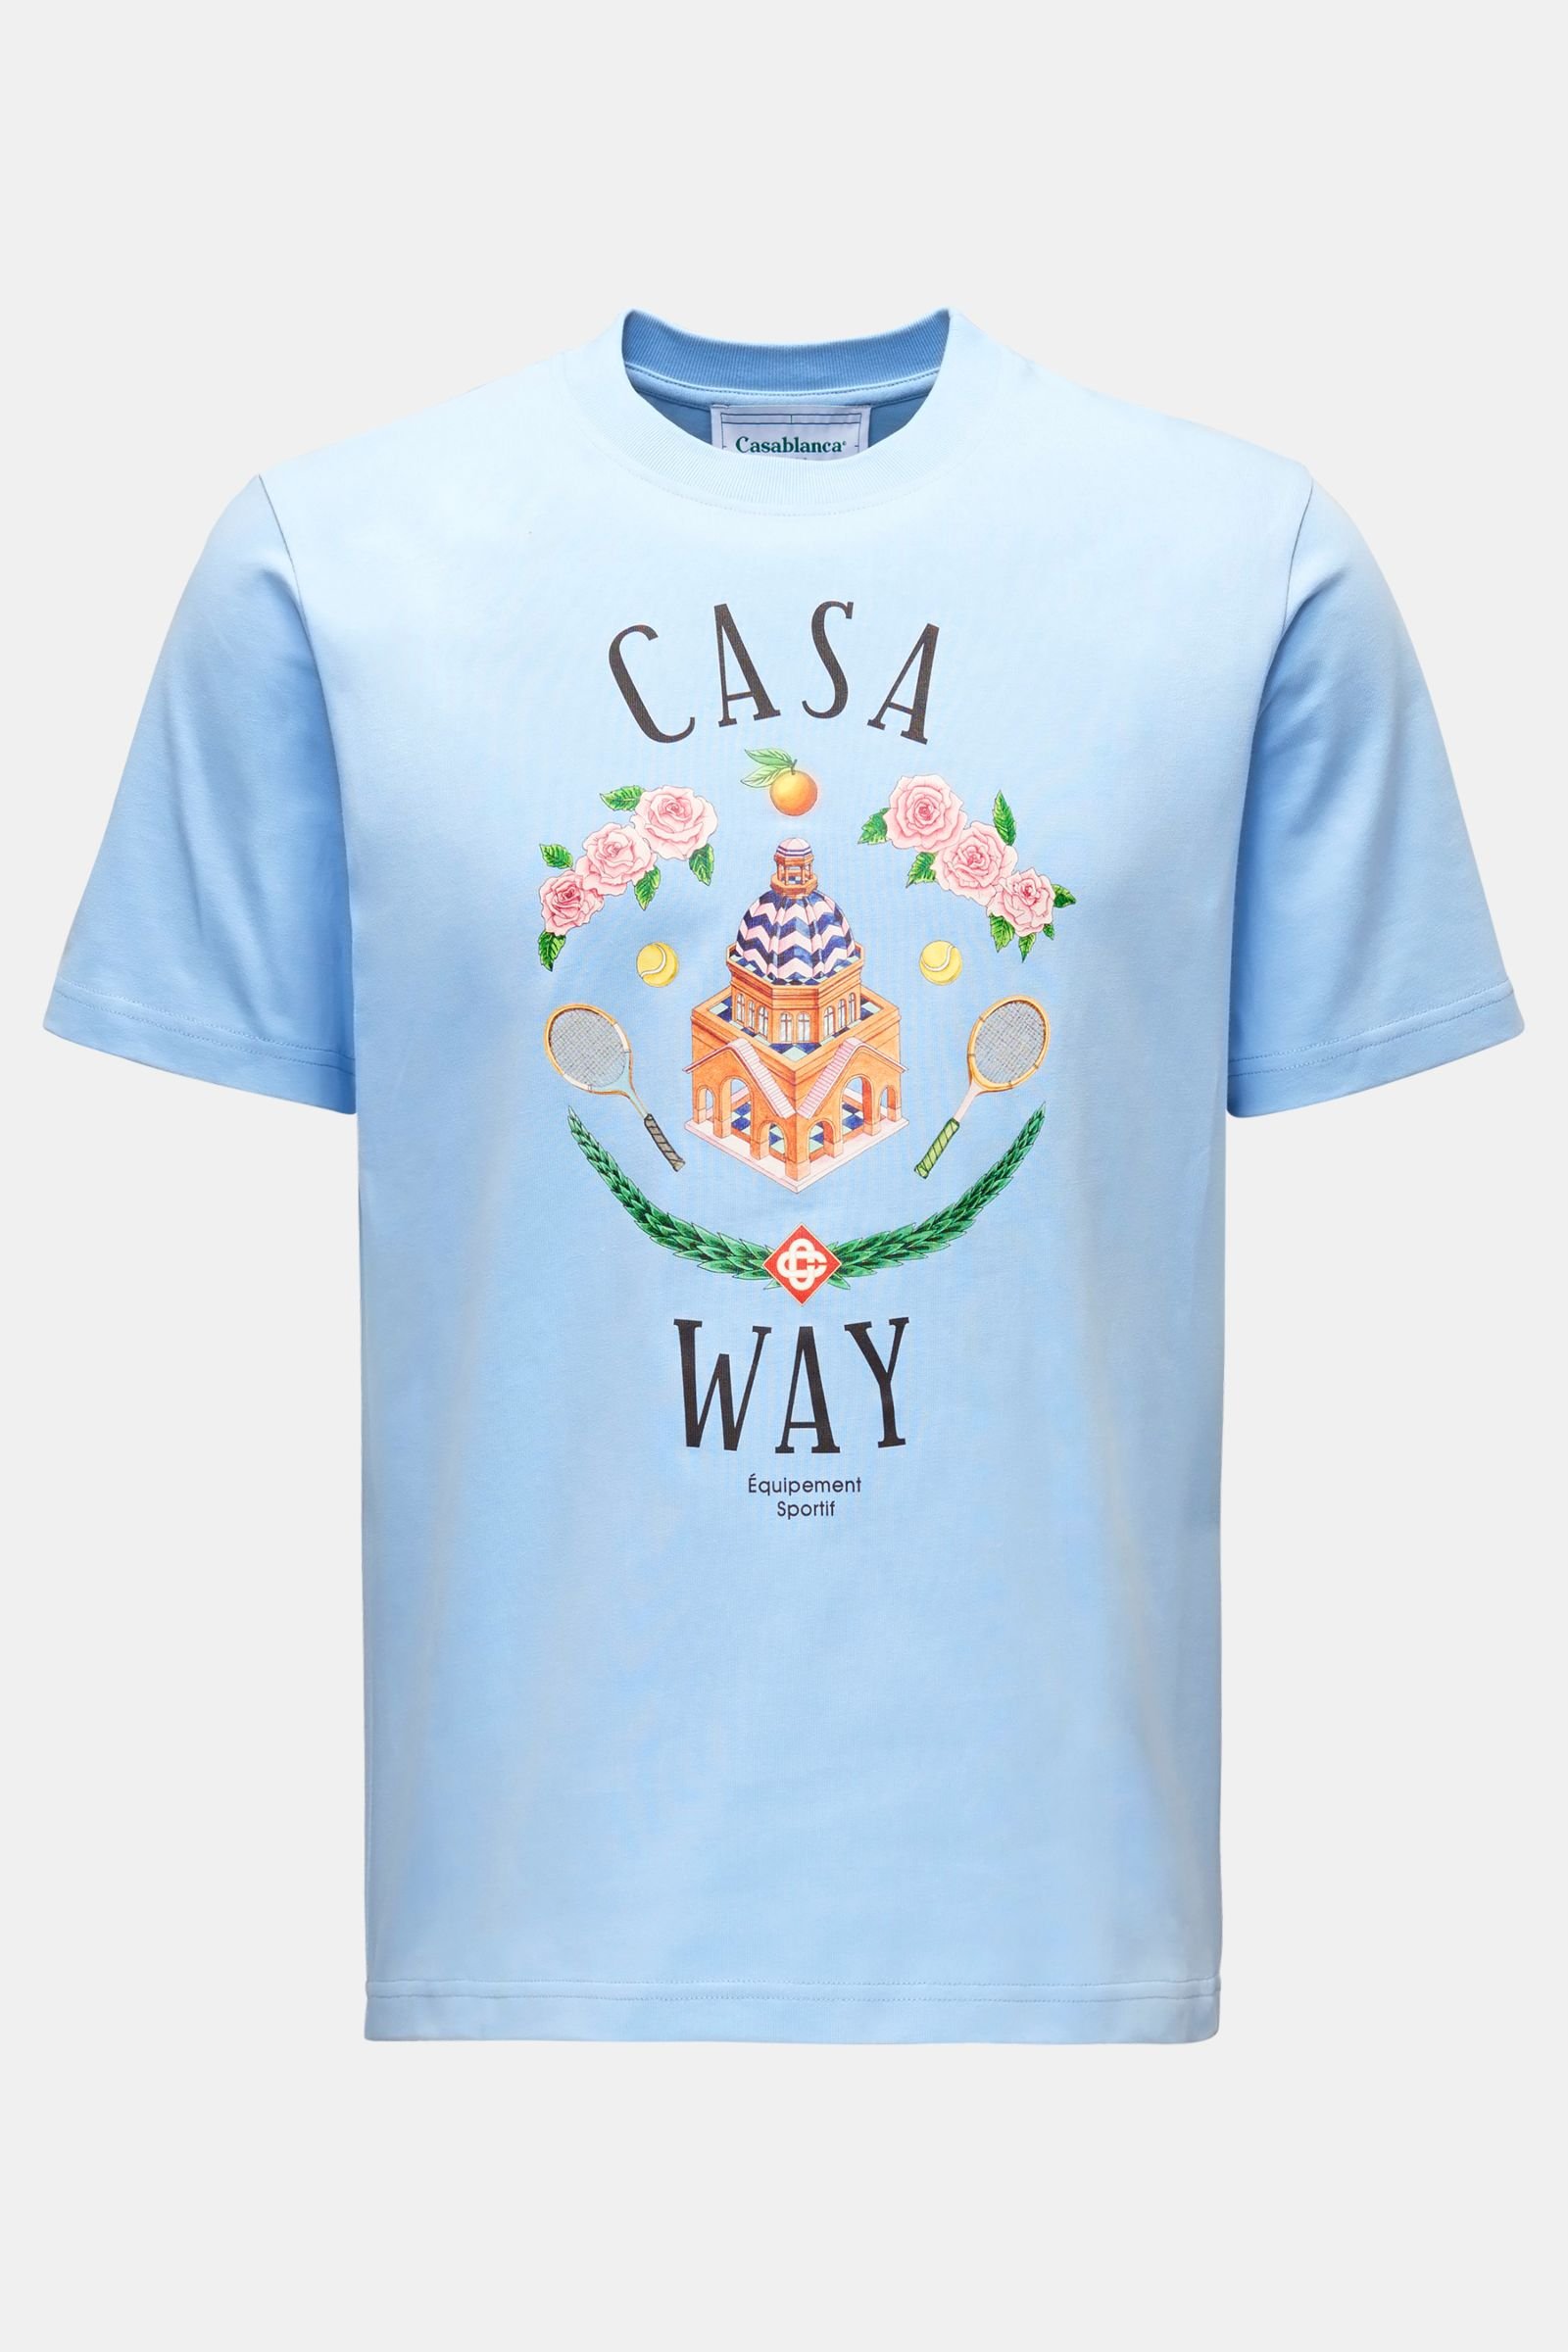 Rundhals-T-Shirt 'Casa Way' hellblau